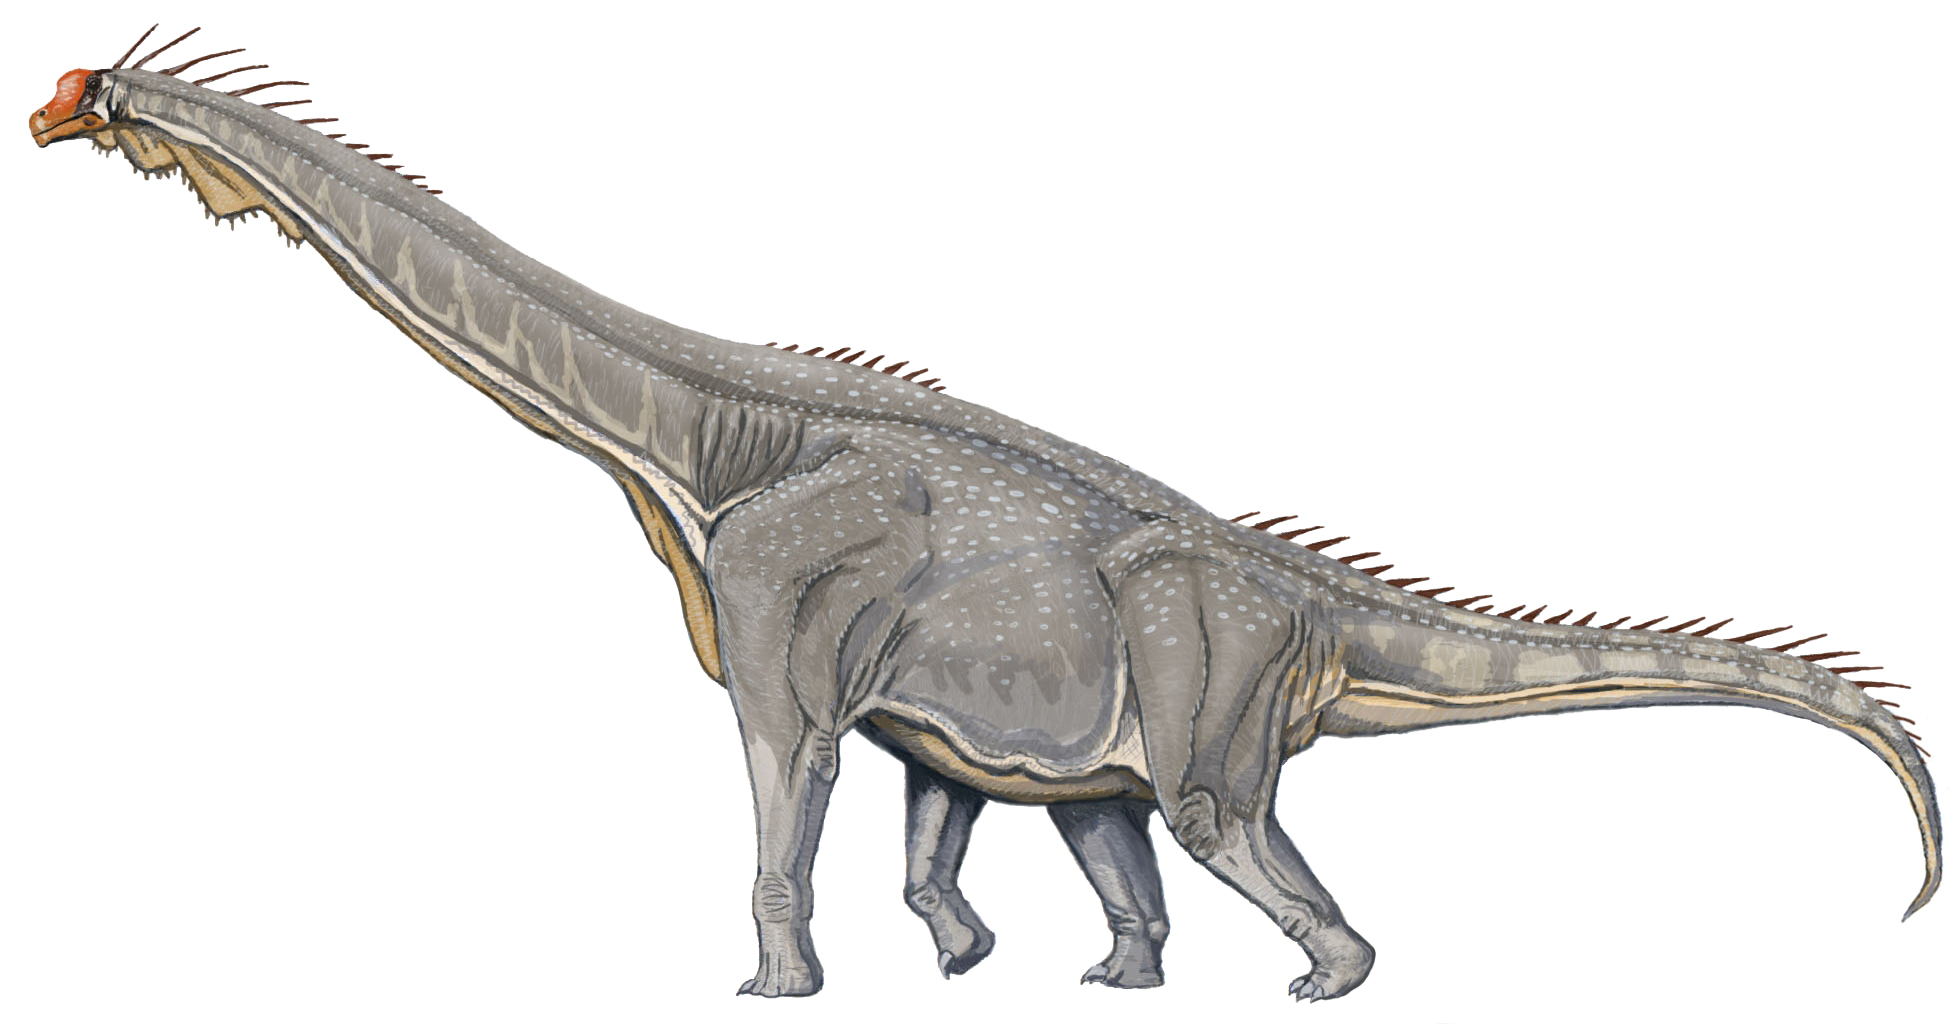 http://upload.wikimedia.org/wikipedia/commons/d/d9/Brachiosaurus_DB.jpg